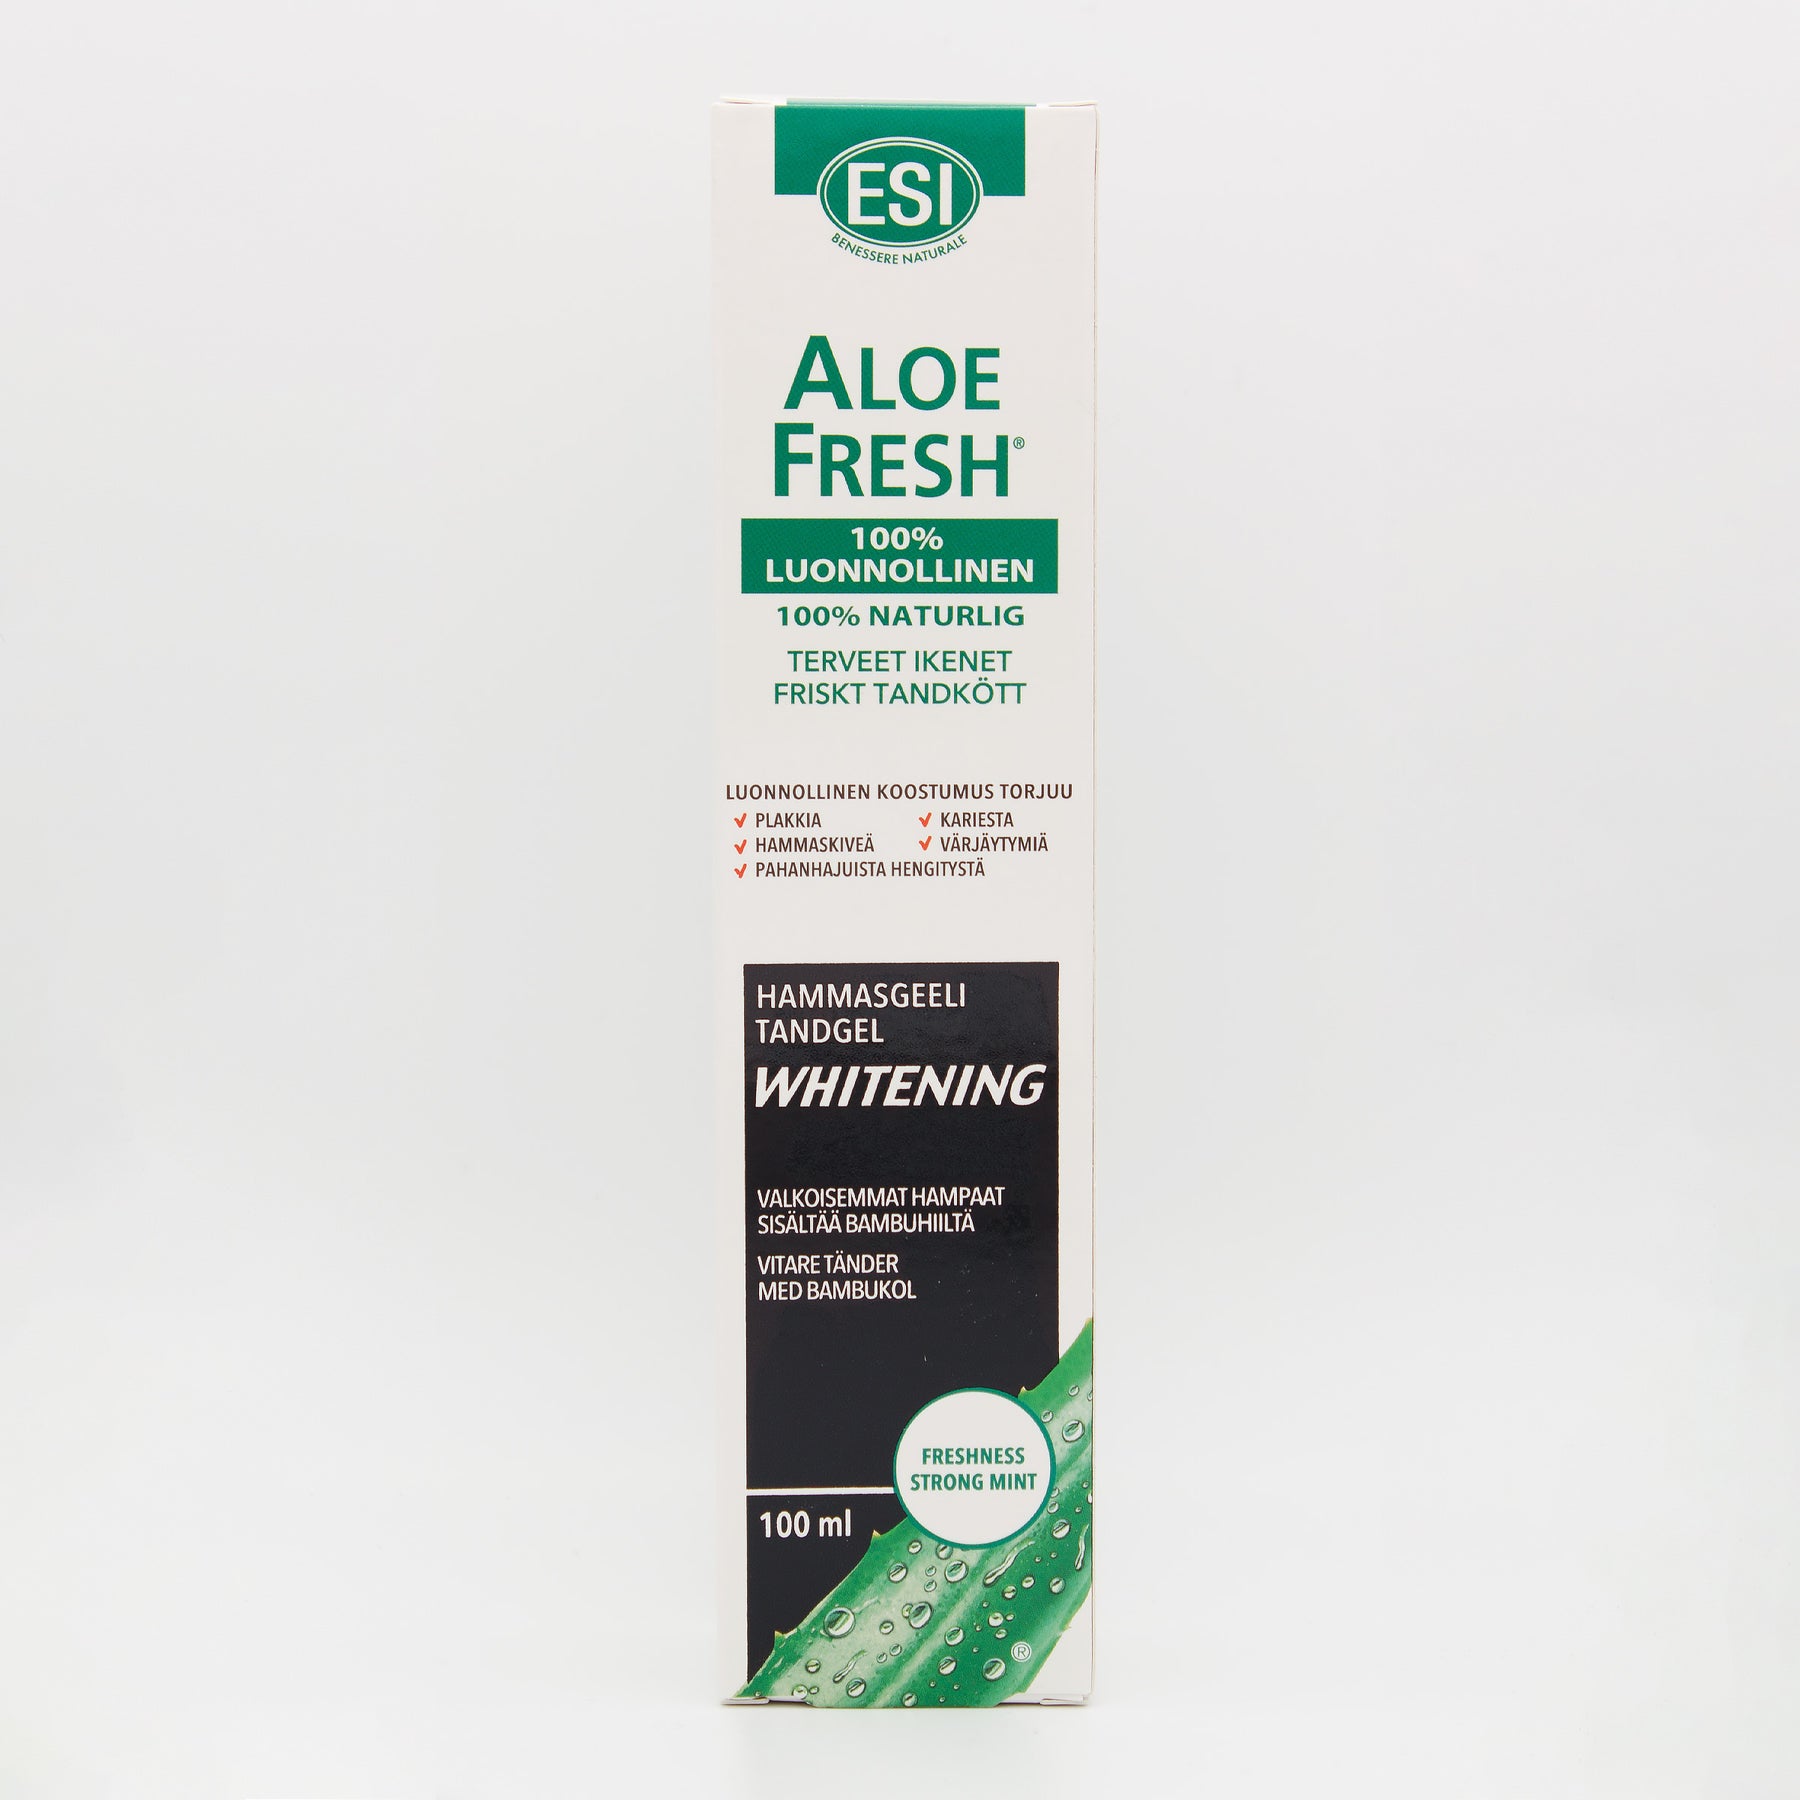 ESI Aloe Fresh Whitening - Valkoisemmat hampaat hammasgeeli 100 ml